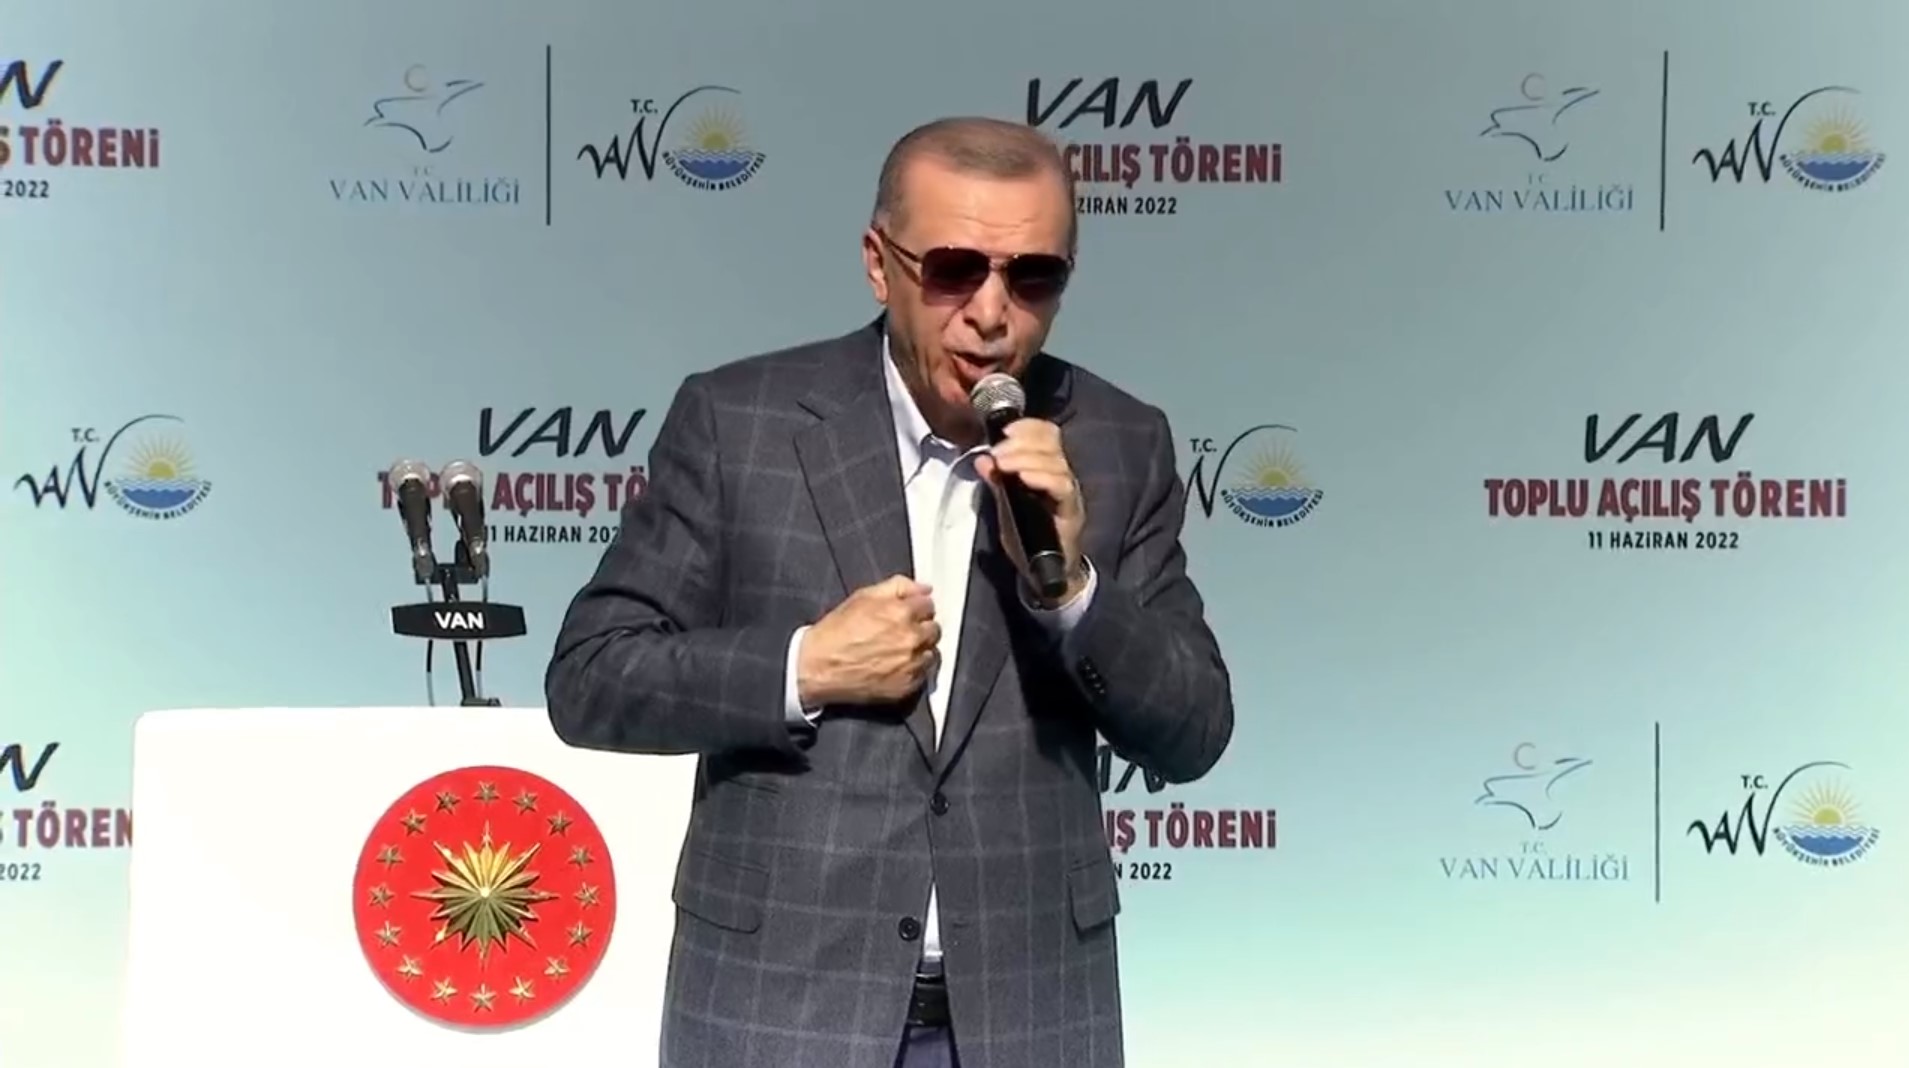 Cumhurbaşkanı Erdoğan, Van'da toplu açılış töreninde konuştu! Birileri bölücülük naraları atarken biz kardeşlik türkülerini söyledik.